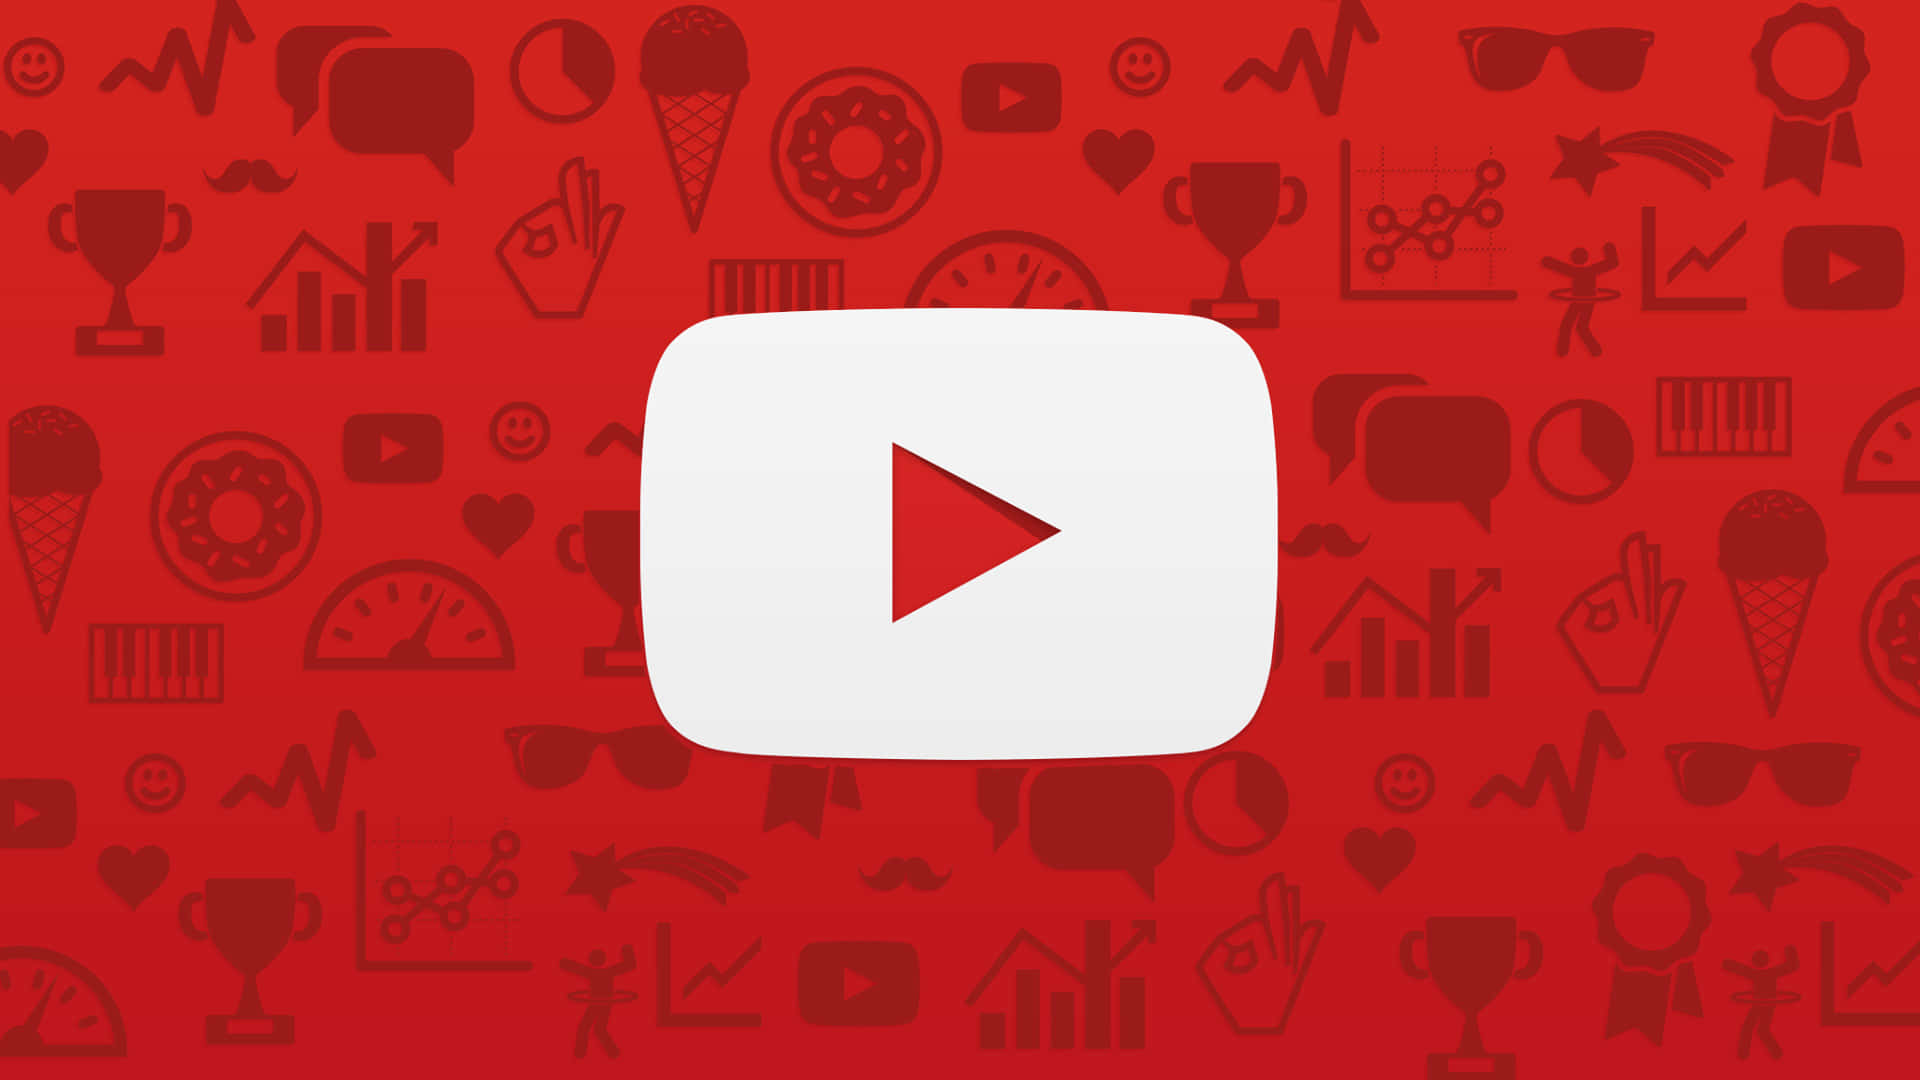 Logode Youtube Con Iconos En Un Fondo Rojo